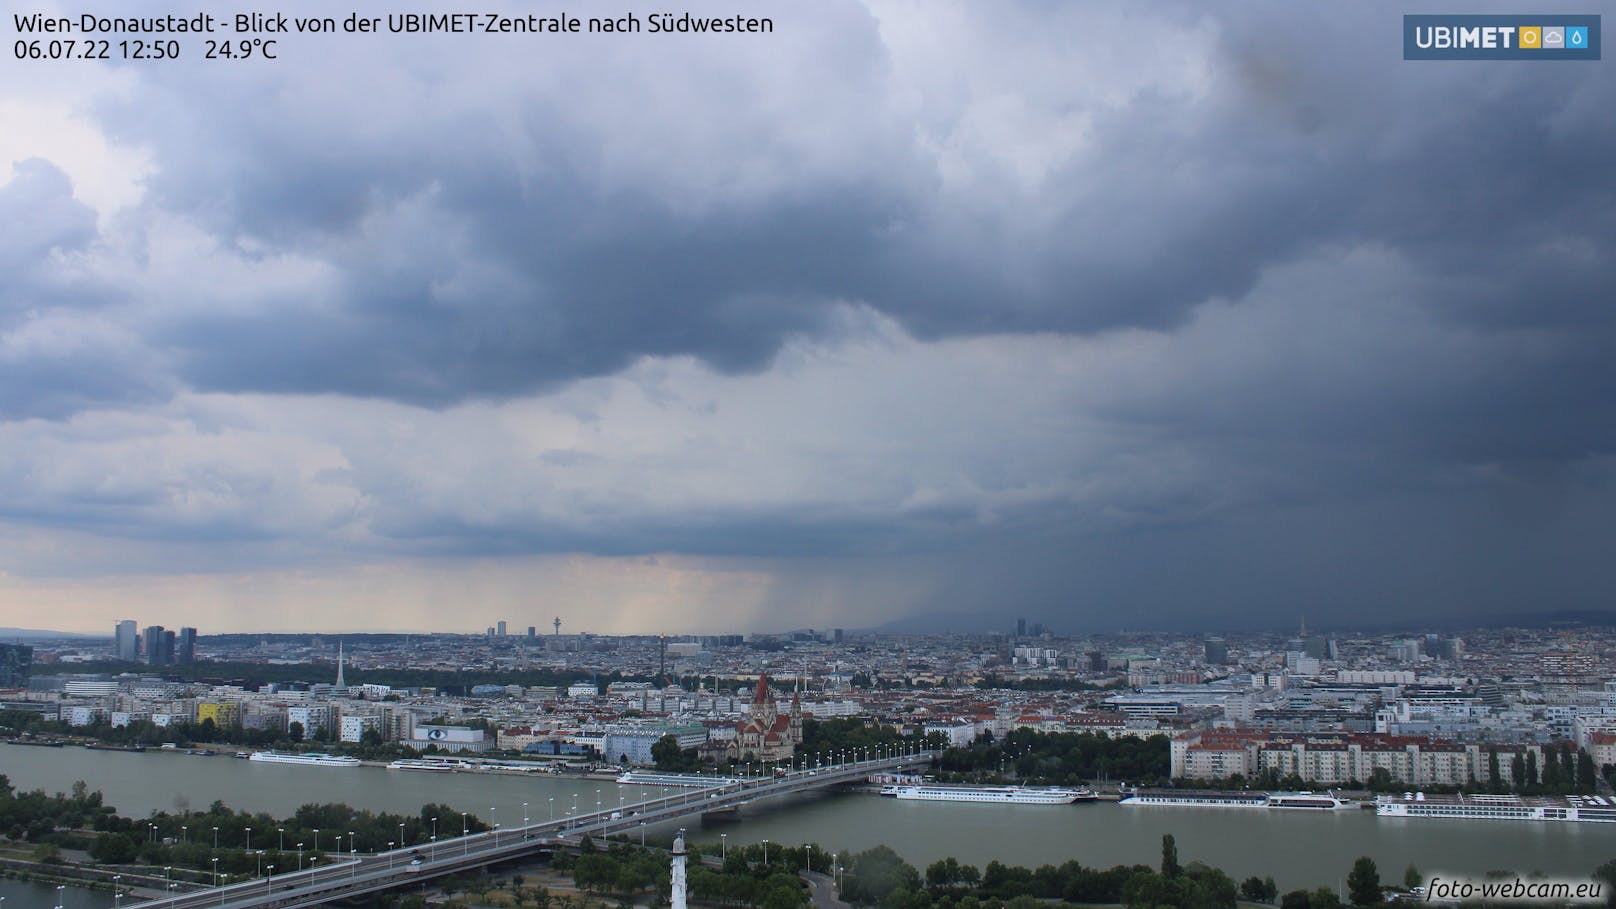 Die Regenwalze war von der UBIMET-Zentrale in der Donaustadt bestens zu sehen.